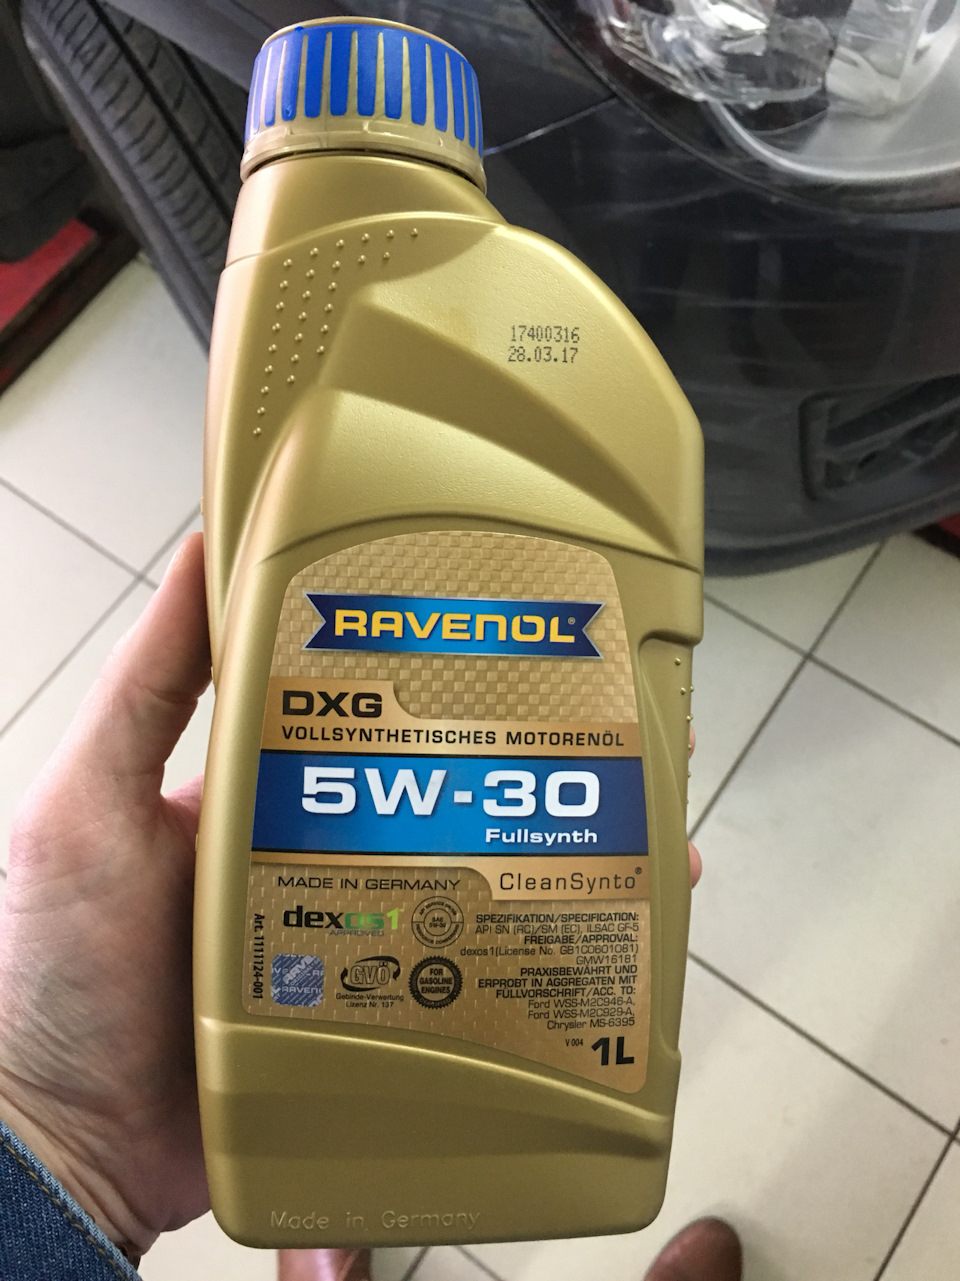 Ravenol DXG 5W30 Jak Wygląda Oryginalny Olej Silnikowy?, 52% OFF